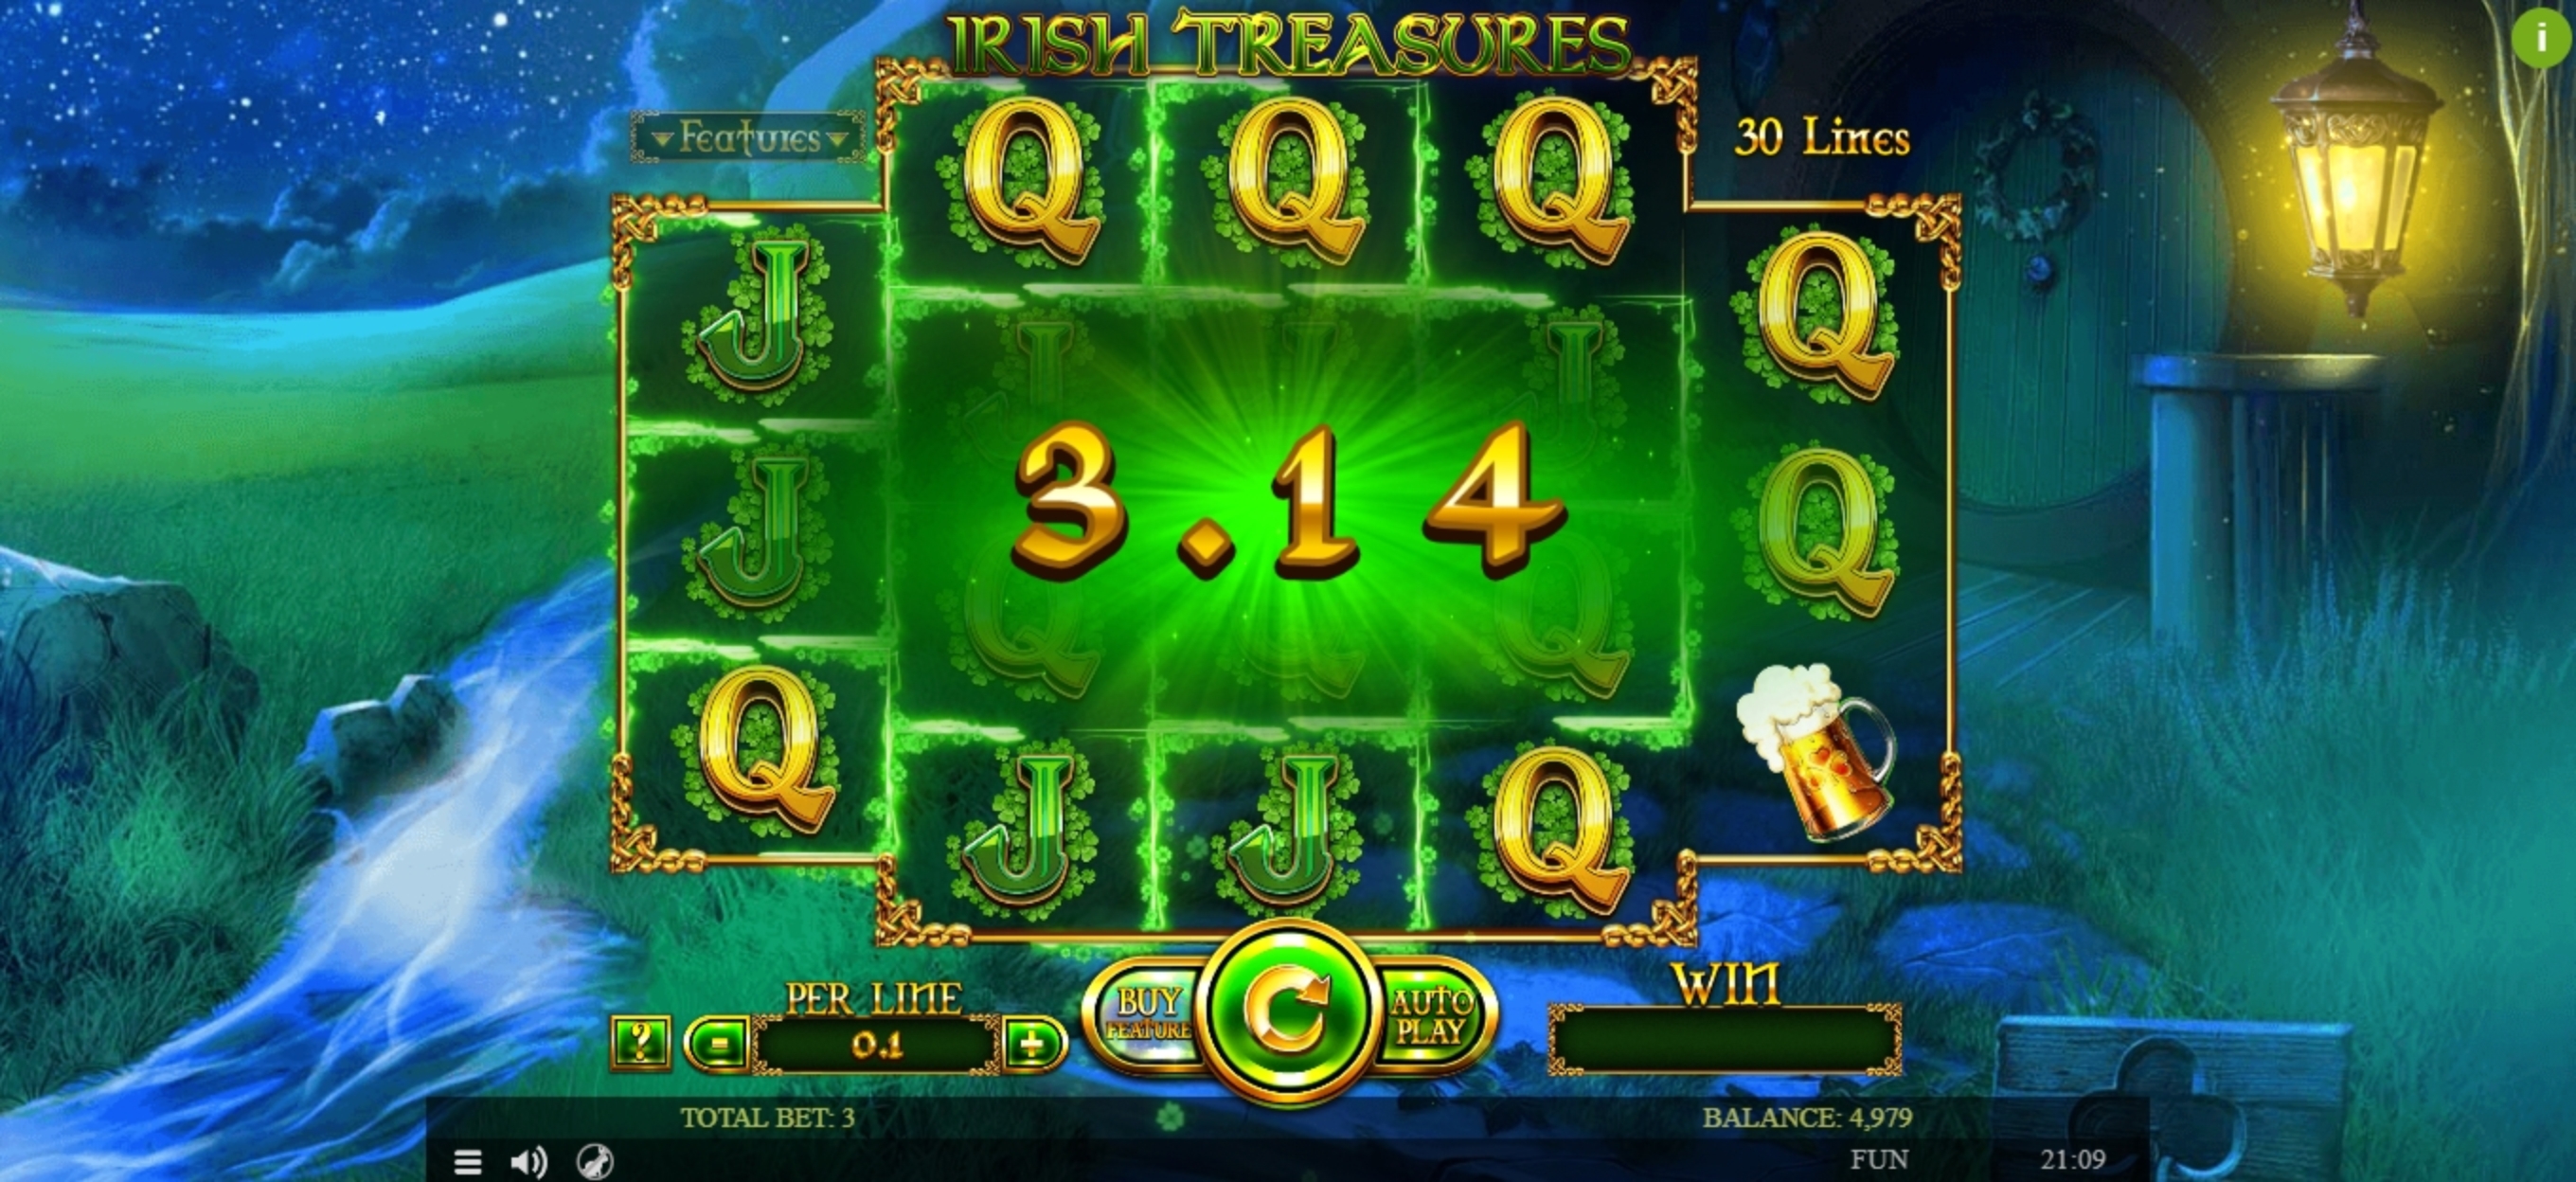 Win Money in Irish Treasures Free Slot Game by Spinomenal